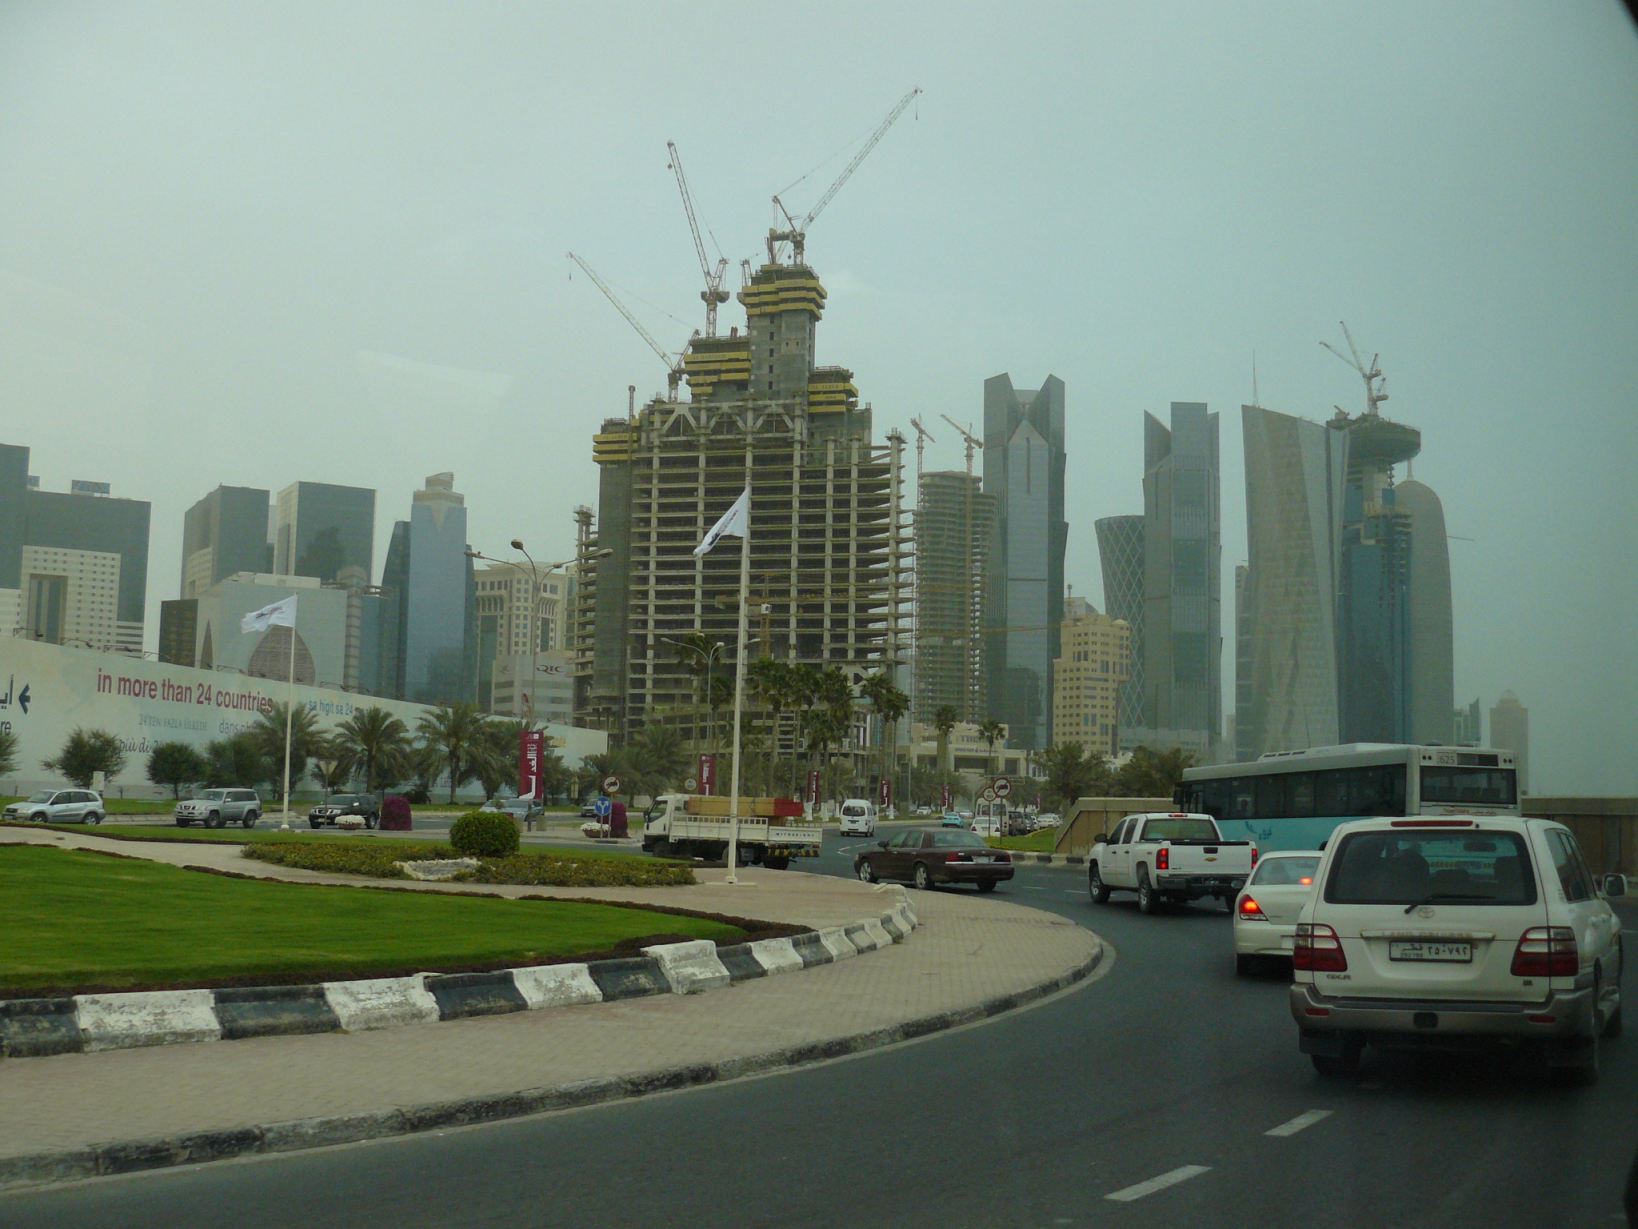 Jellegzetes dohai városkép kész és félkész felhőkarcolókkal és: igen, kivételesen egy igazi városi busz is ott a körforgalomban